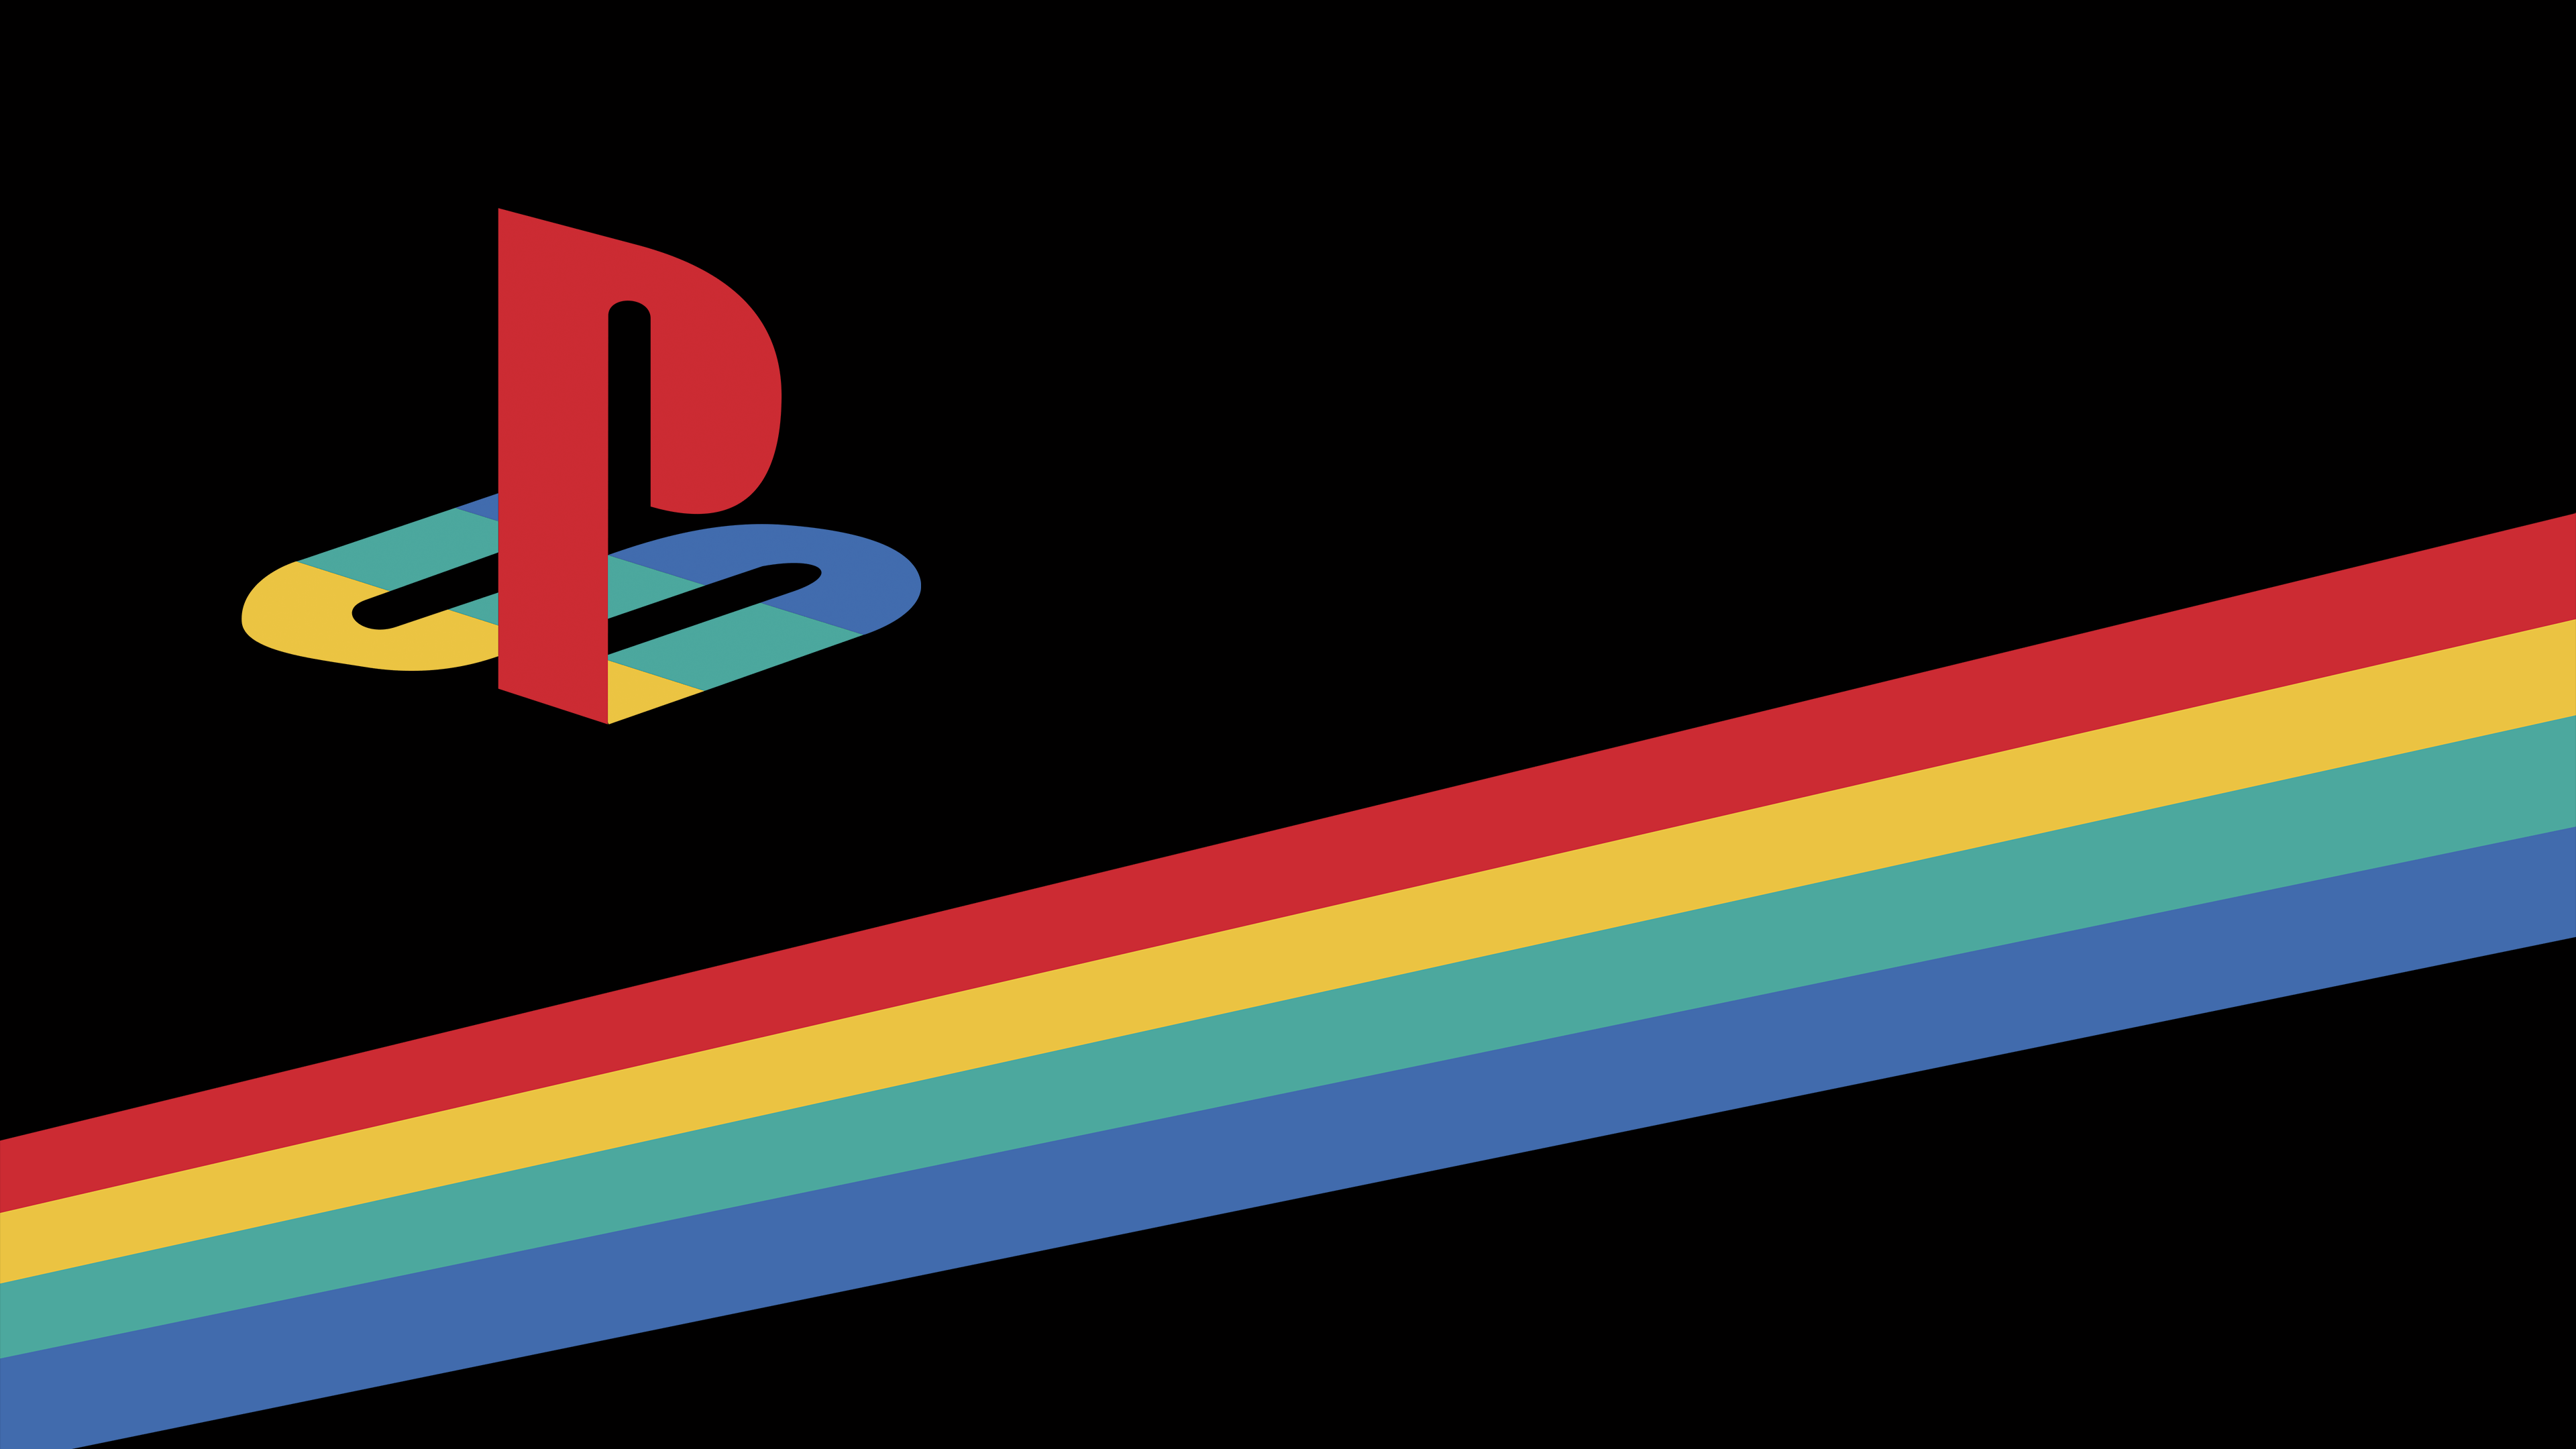 PlayStation Wallpaper